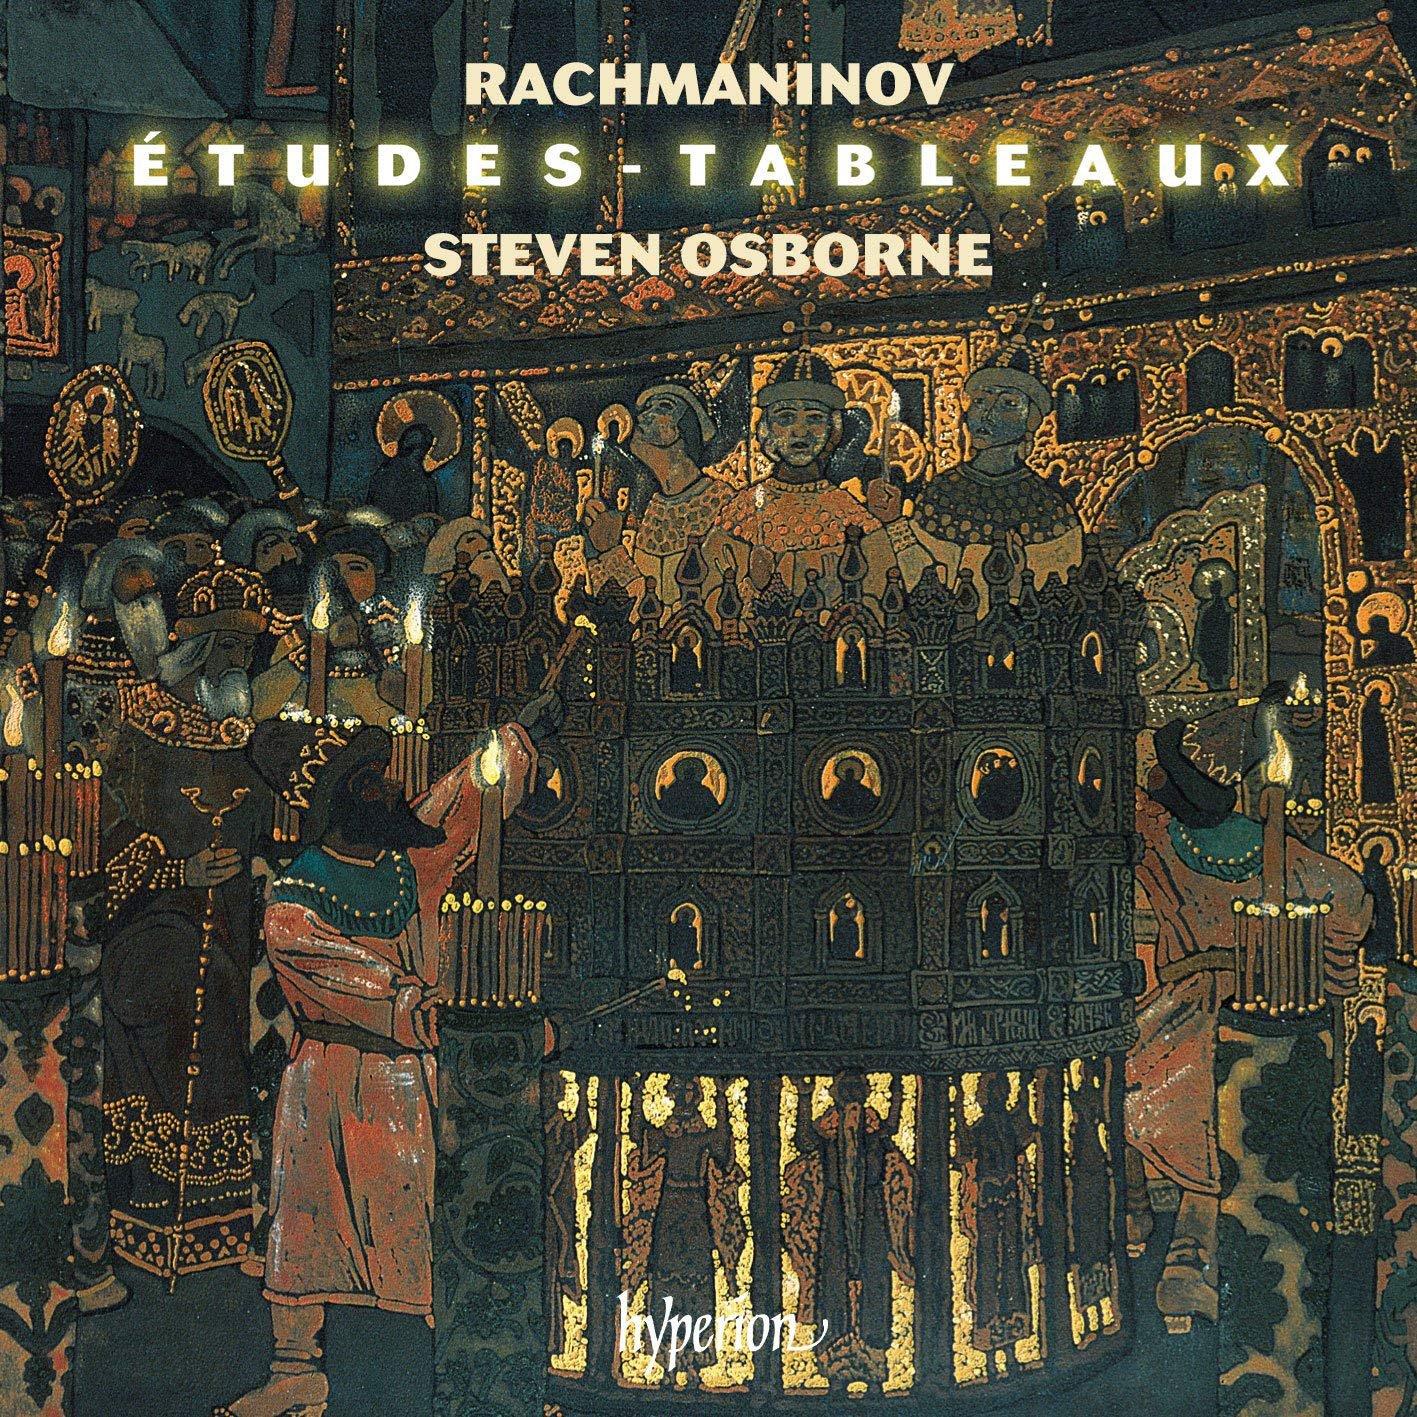 Rachmaninoff - Etudes-Tableaux Op. 33 & 39